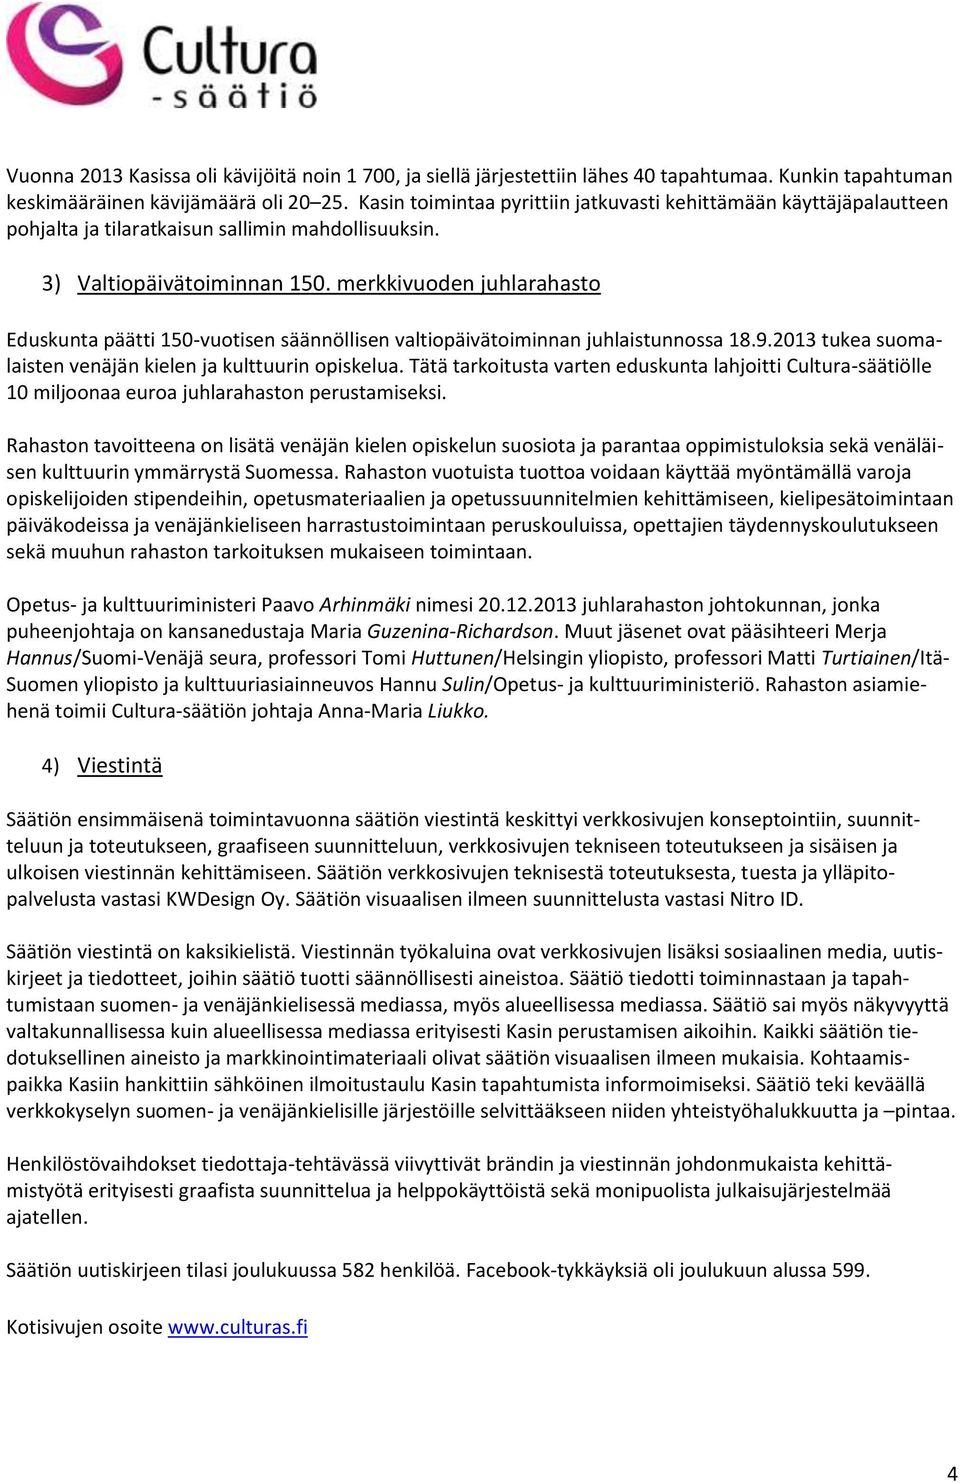 merkkivuoden juhlarahasto Eduskunta päätti 150-vuotisen säännöllisen valtiopäivätoiminnan juhlaistunnossa 18.9.2013 tukea suomalaisten venäjän kielen ja kulttuurin opiskelua.